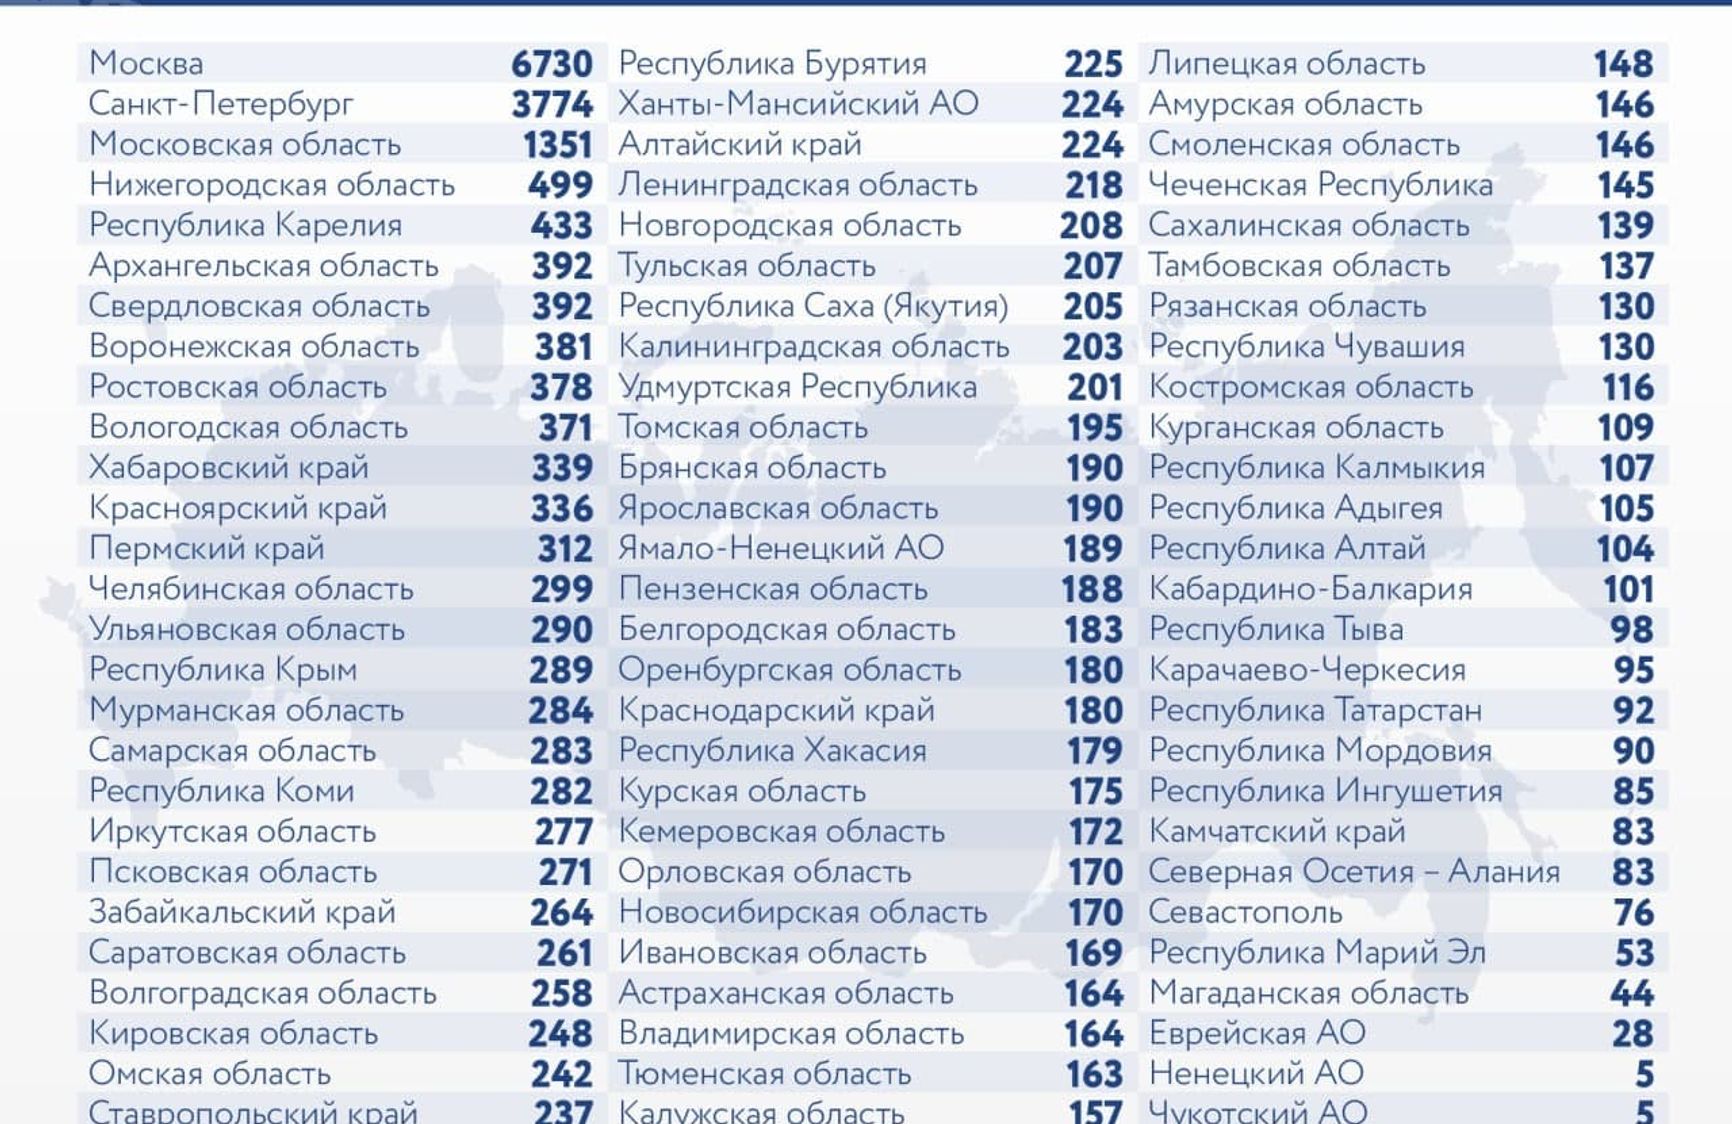 У Росії офіційно зареєстрували 27 927 нових випадків коронавируса, 6730 з них - в Москві